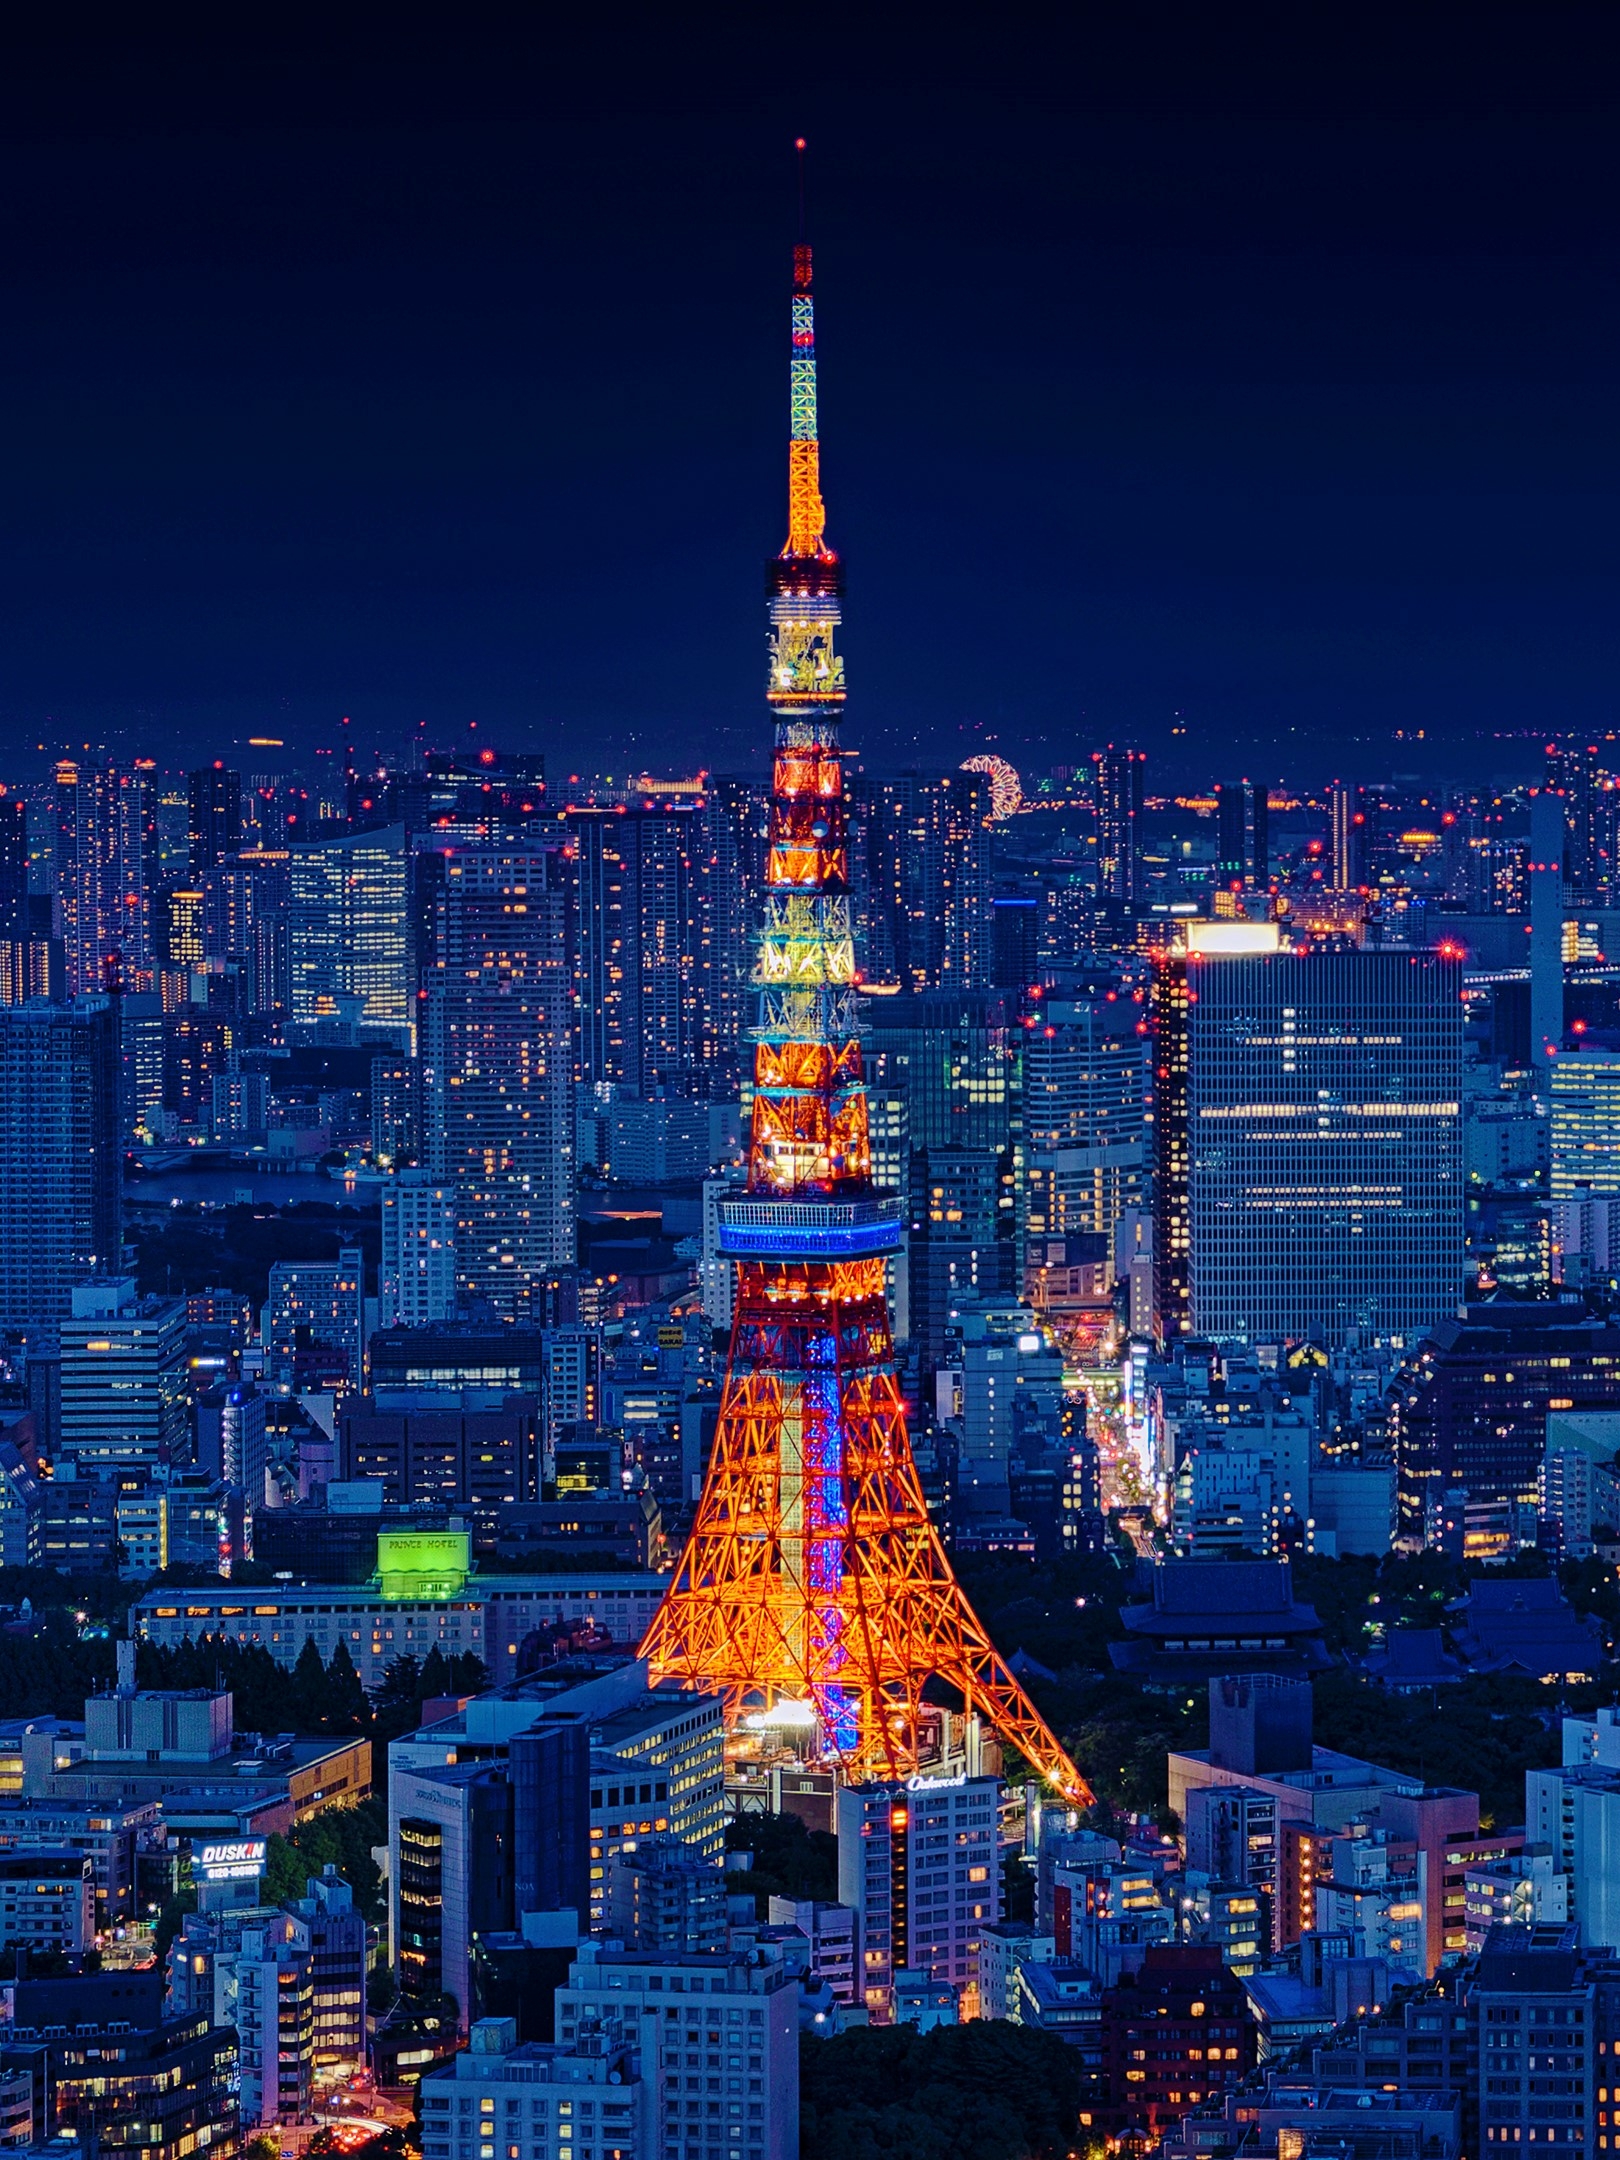 Скачать обои бесплатно Города, Ночь, Город, Япония, Токио, Сделано Человеком, Токийская Башня картинка на рабочий стол ПК